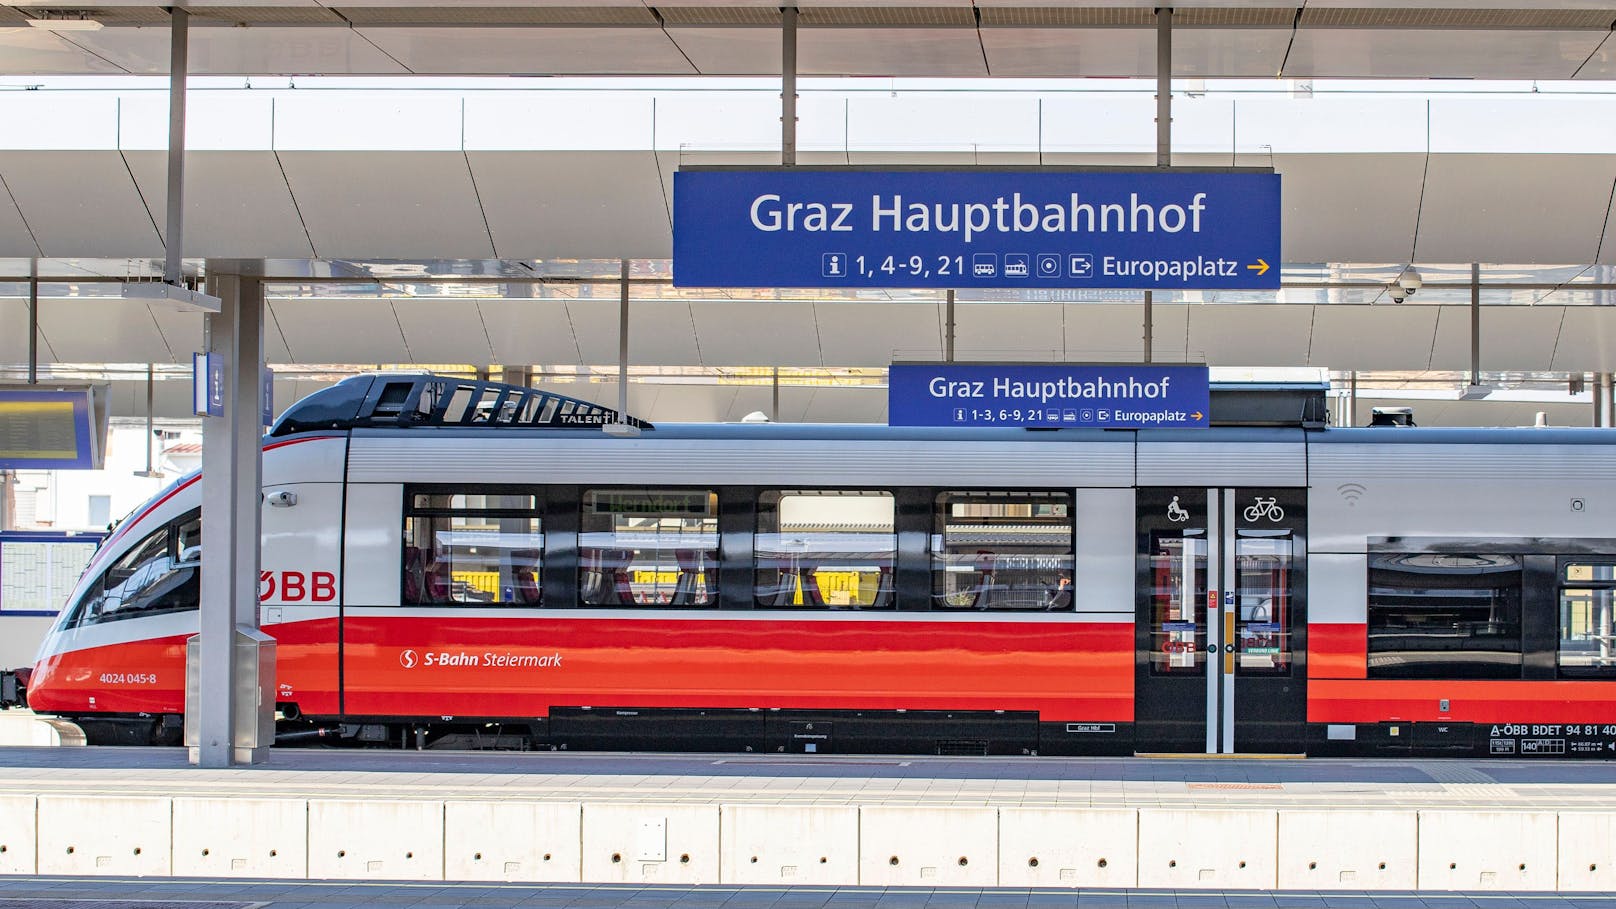 Der Grazer Hauptbahnhof wird täglich von vielen Reisenden frequentiert.